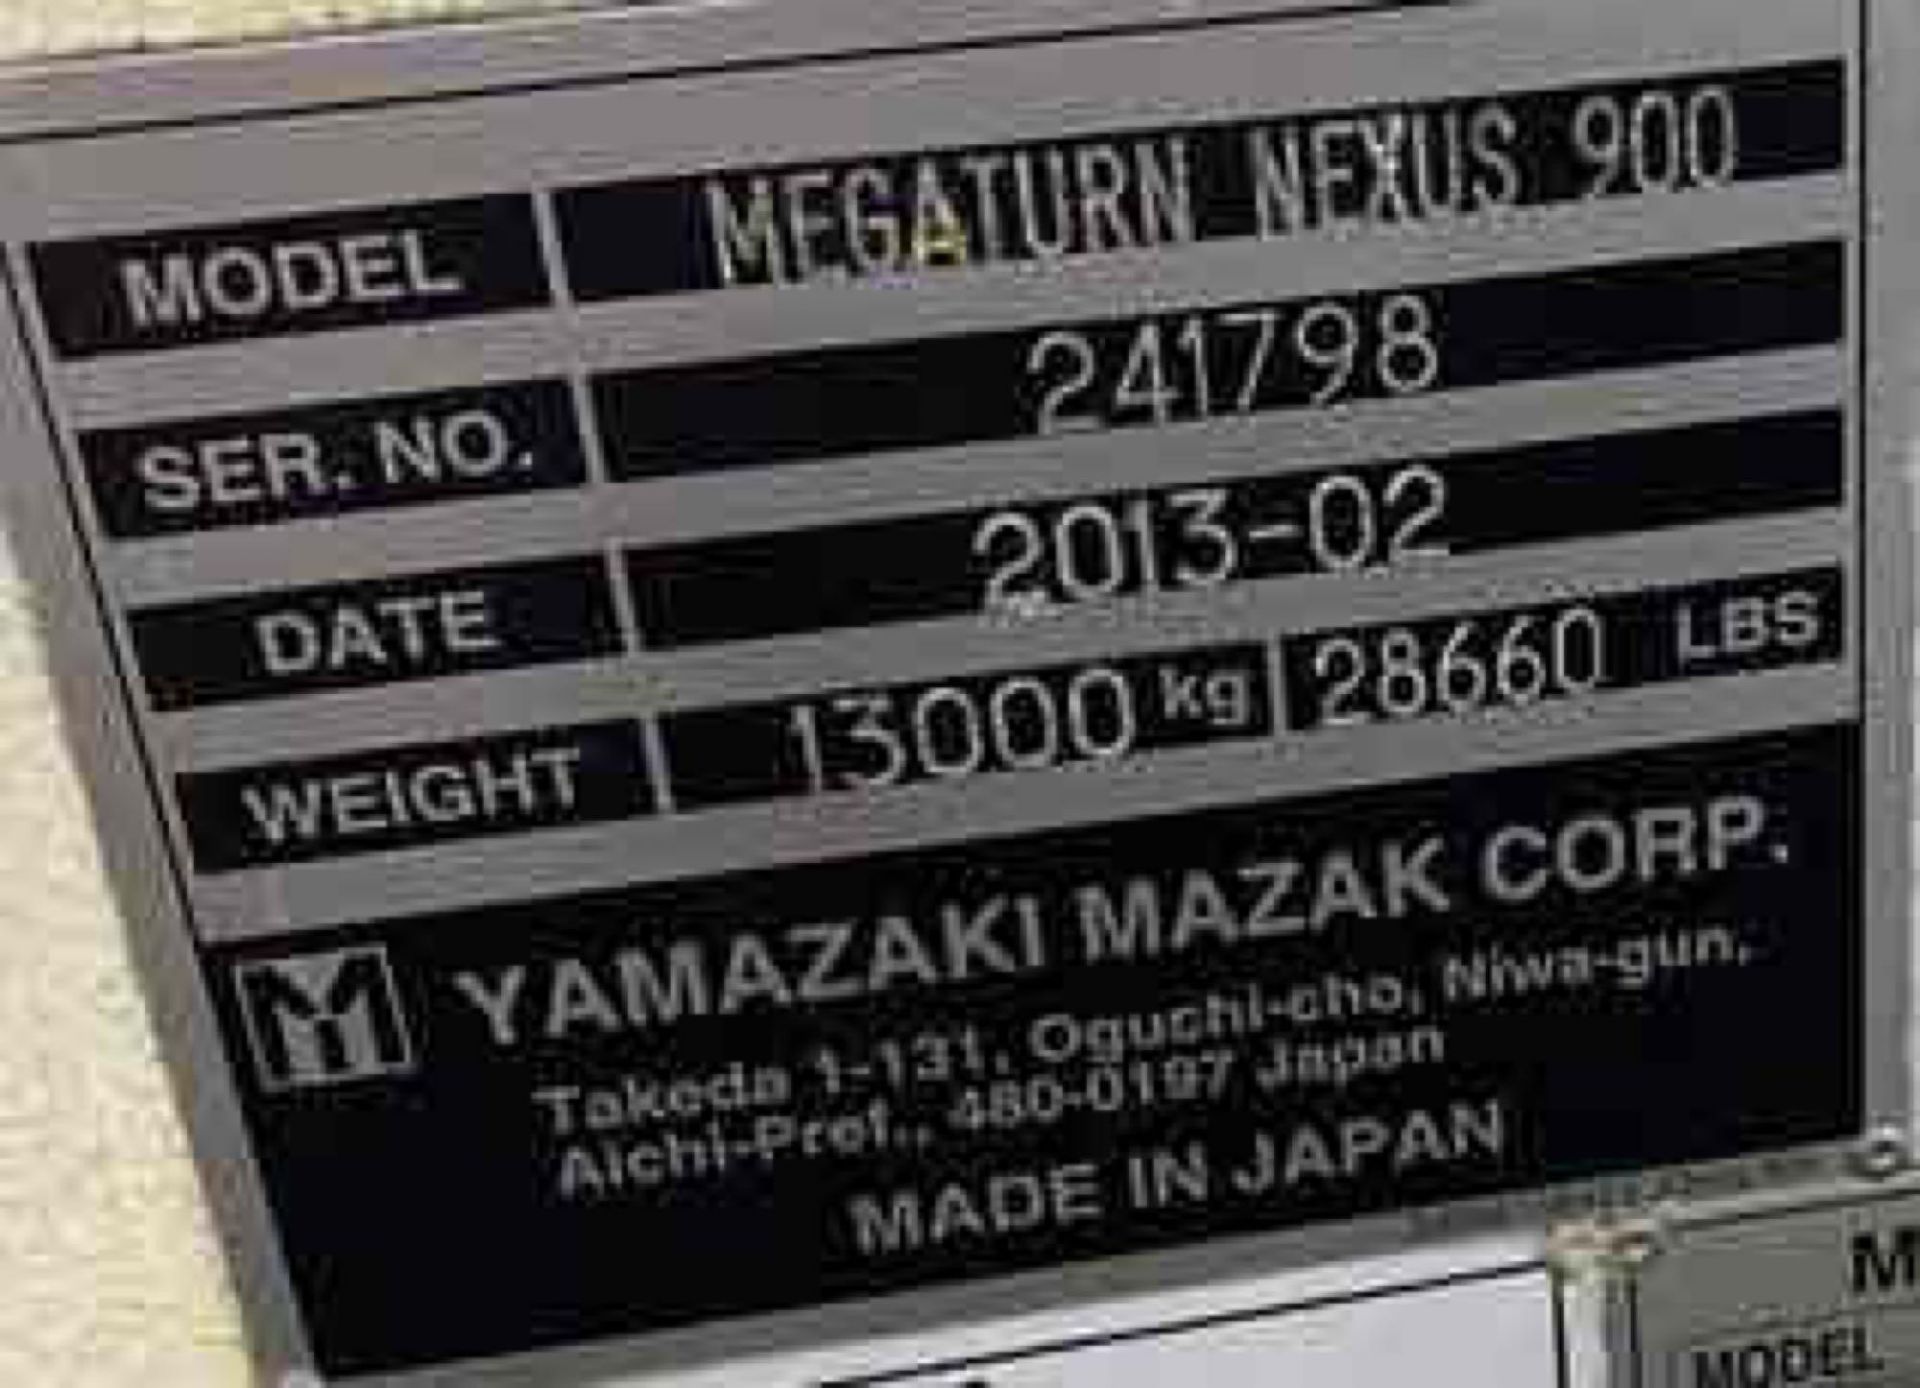 2013 Mazak Megaturn Nexus 900 CNC VTL - Image 7 of 7